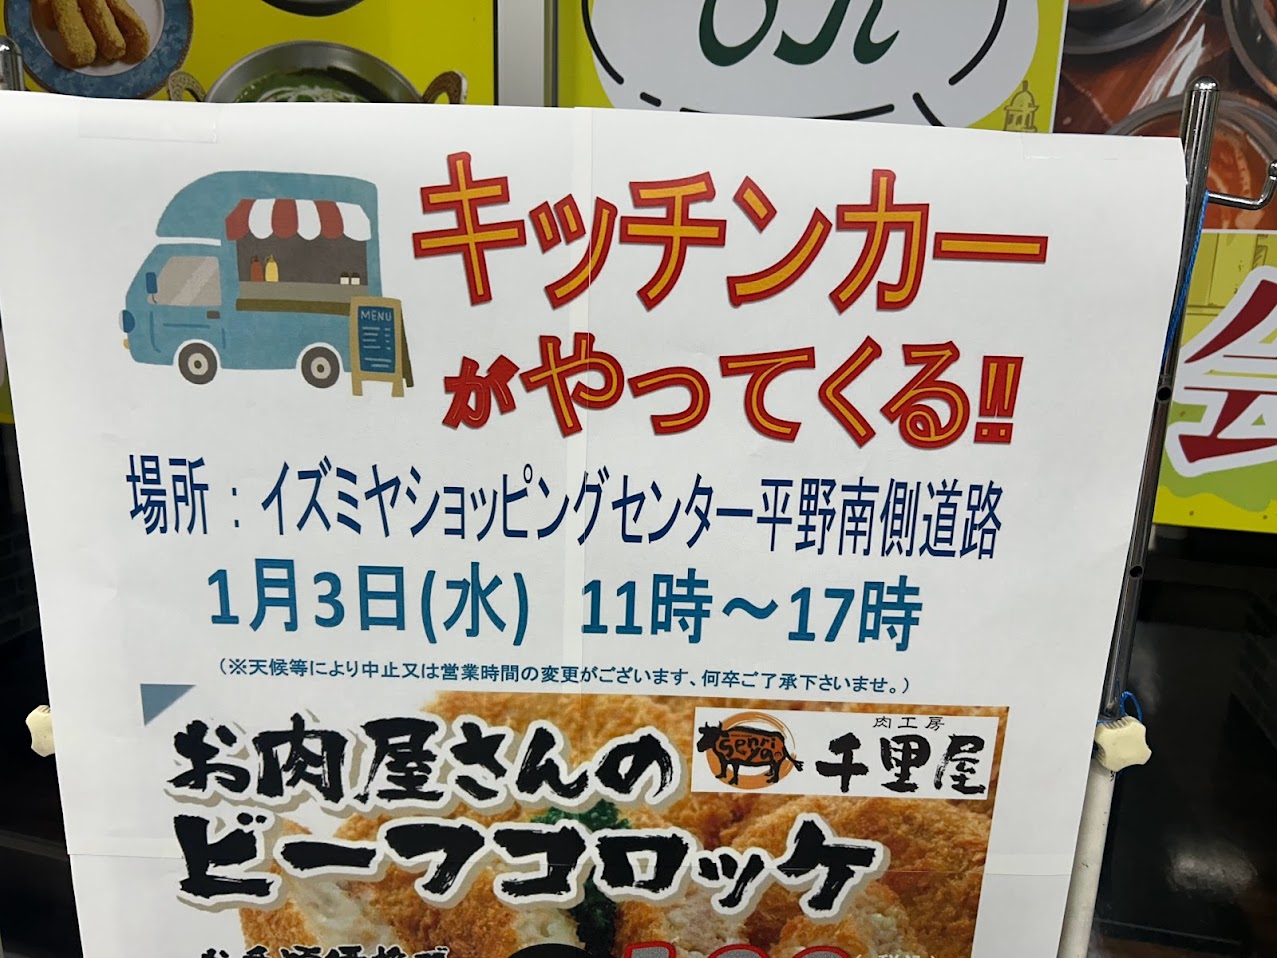 イズミヤショッピングセンター平野キッチンカーお知らせ2